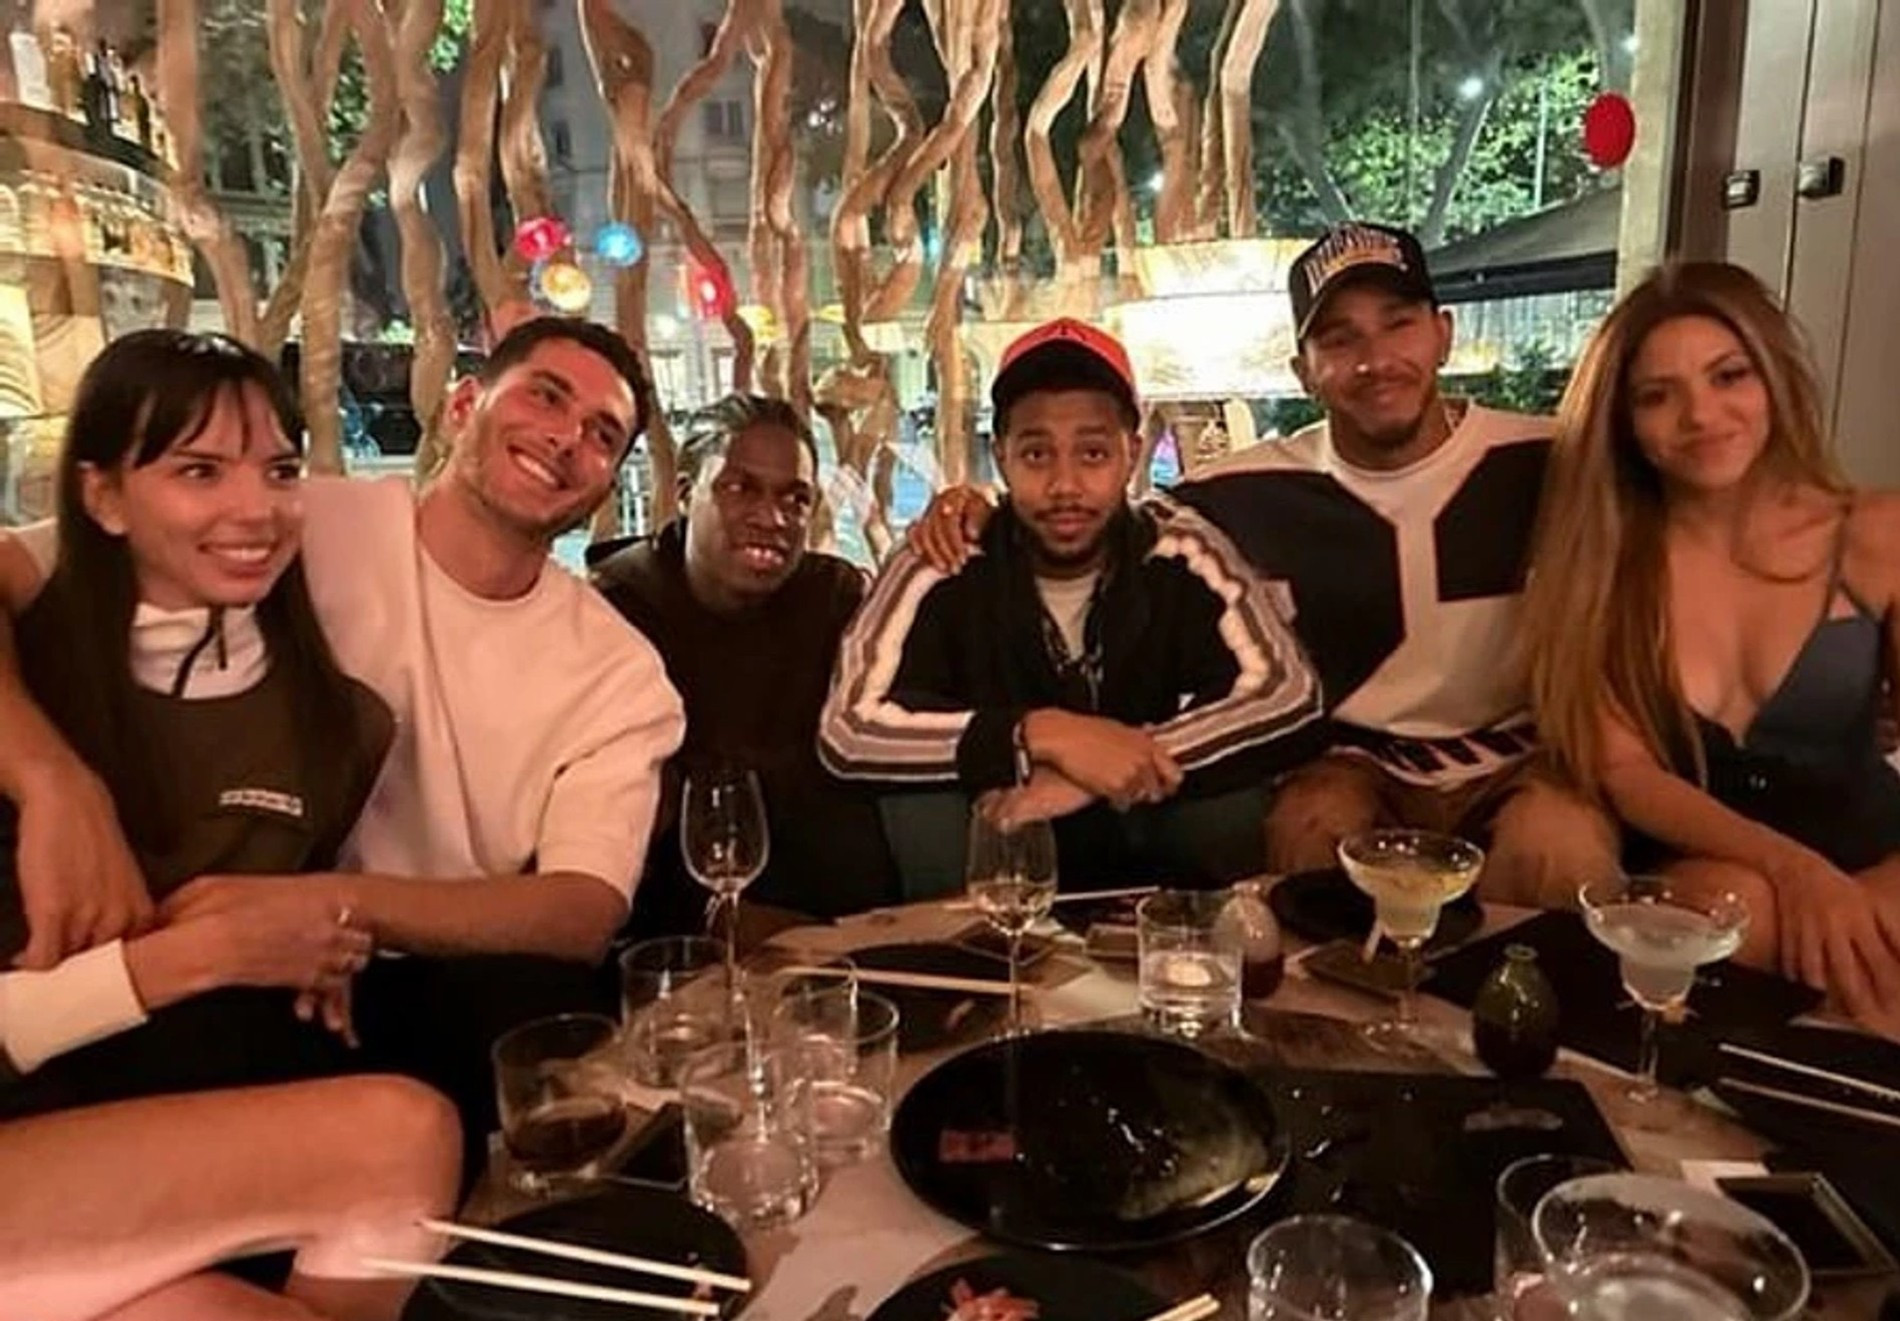 Шакира и Льюис (справа) ужинают в ресторане Барселоны с друзьями
Фото: Инстаграм (запрещен в РФ)